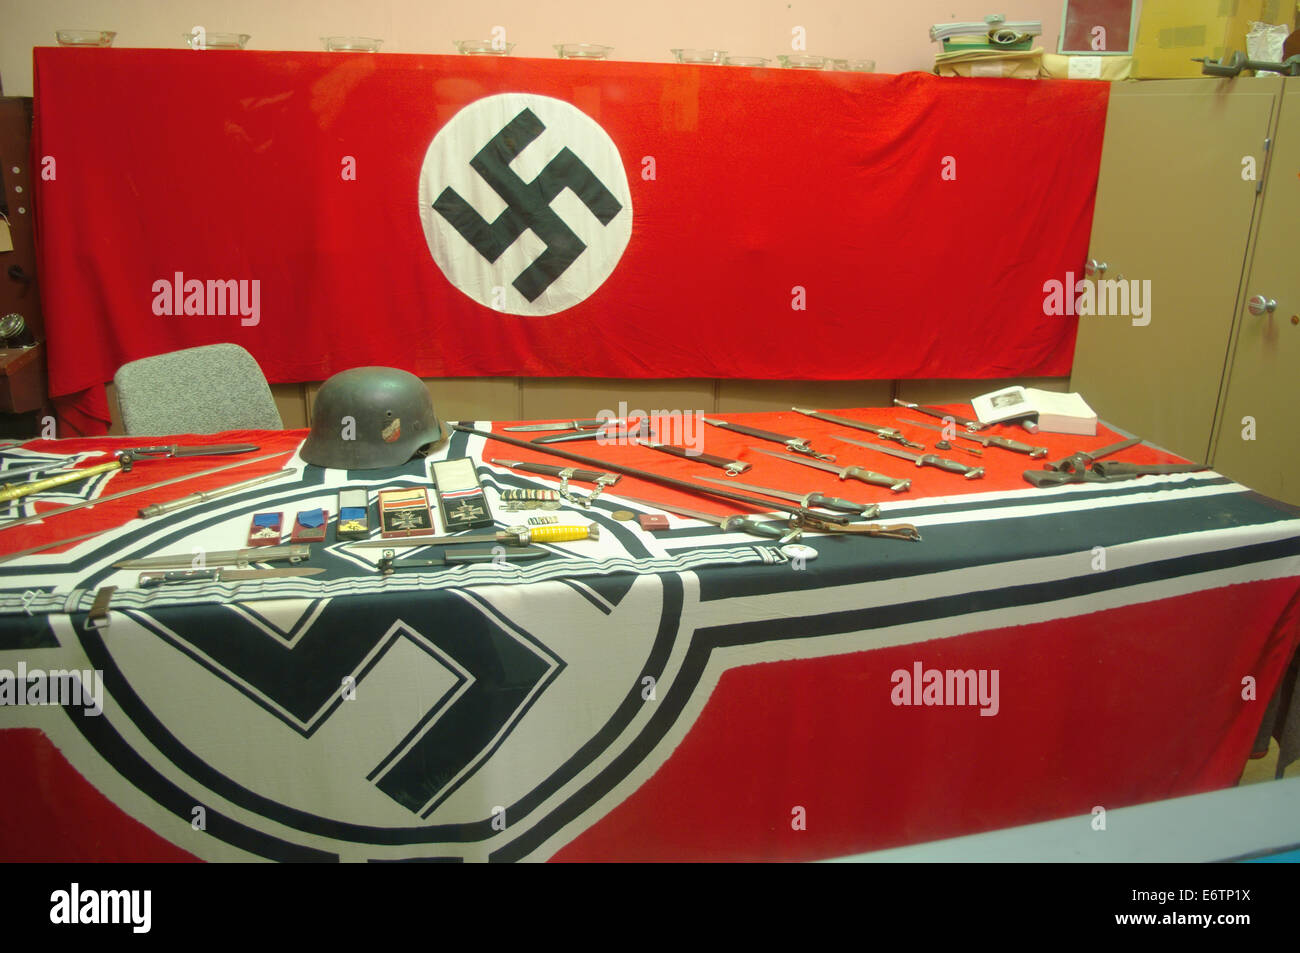 Objets nazis de ww2, drapeau nazi rouge Banque D'Images